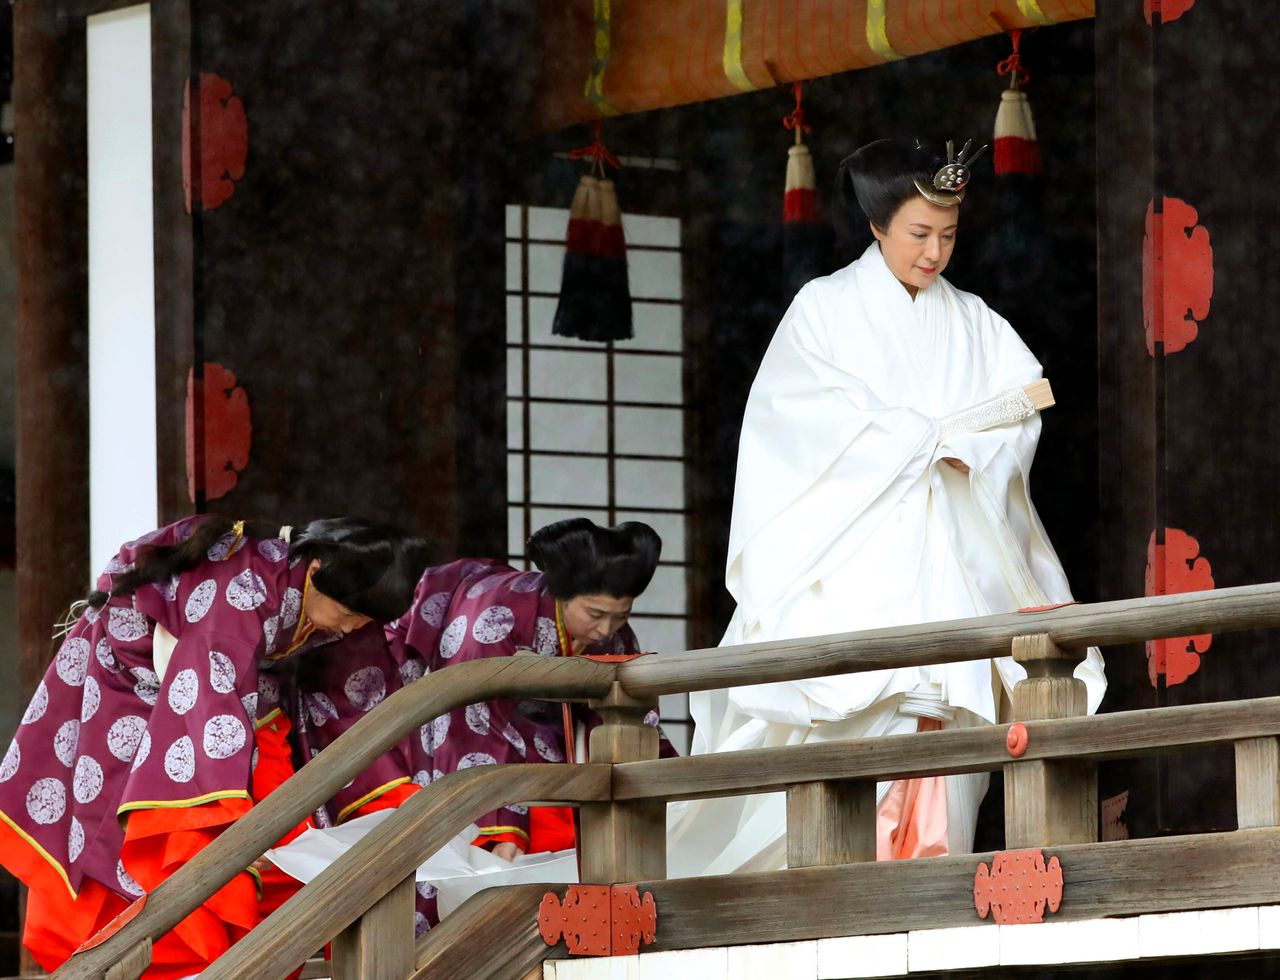 Η αυτοκράτειρα Μασάκο αποχωρεί από το Κασικοντοκόρο, έναν ναό σίντο στον οποίο προσευχήθηκε πριν την ενθρόνιση